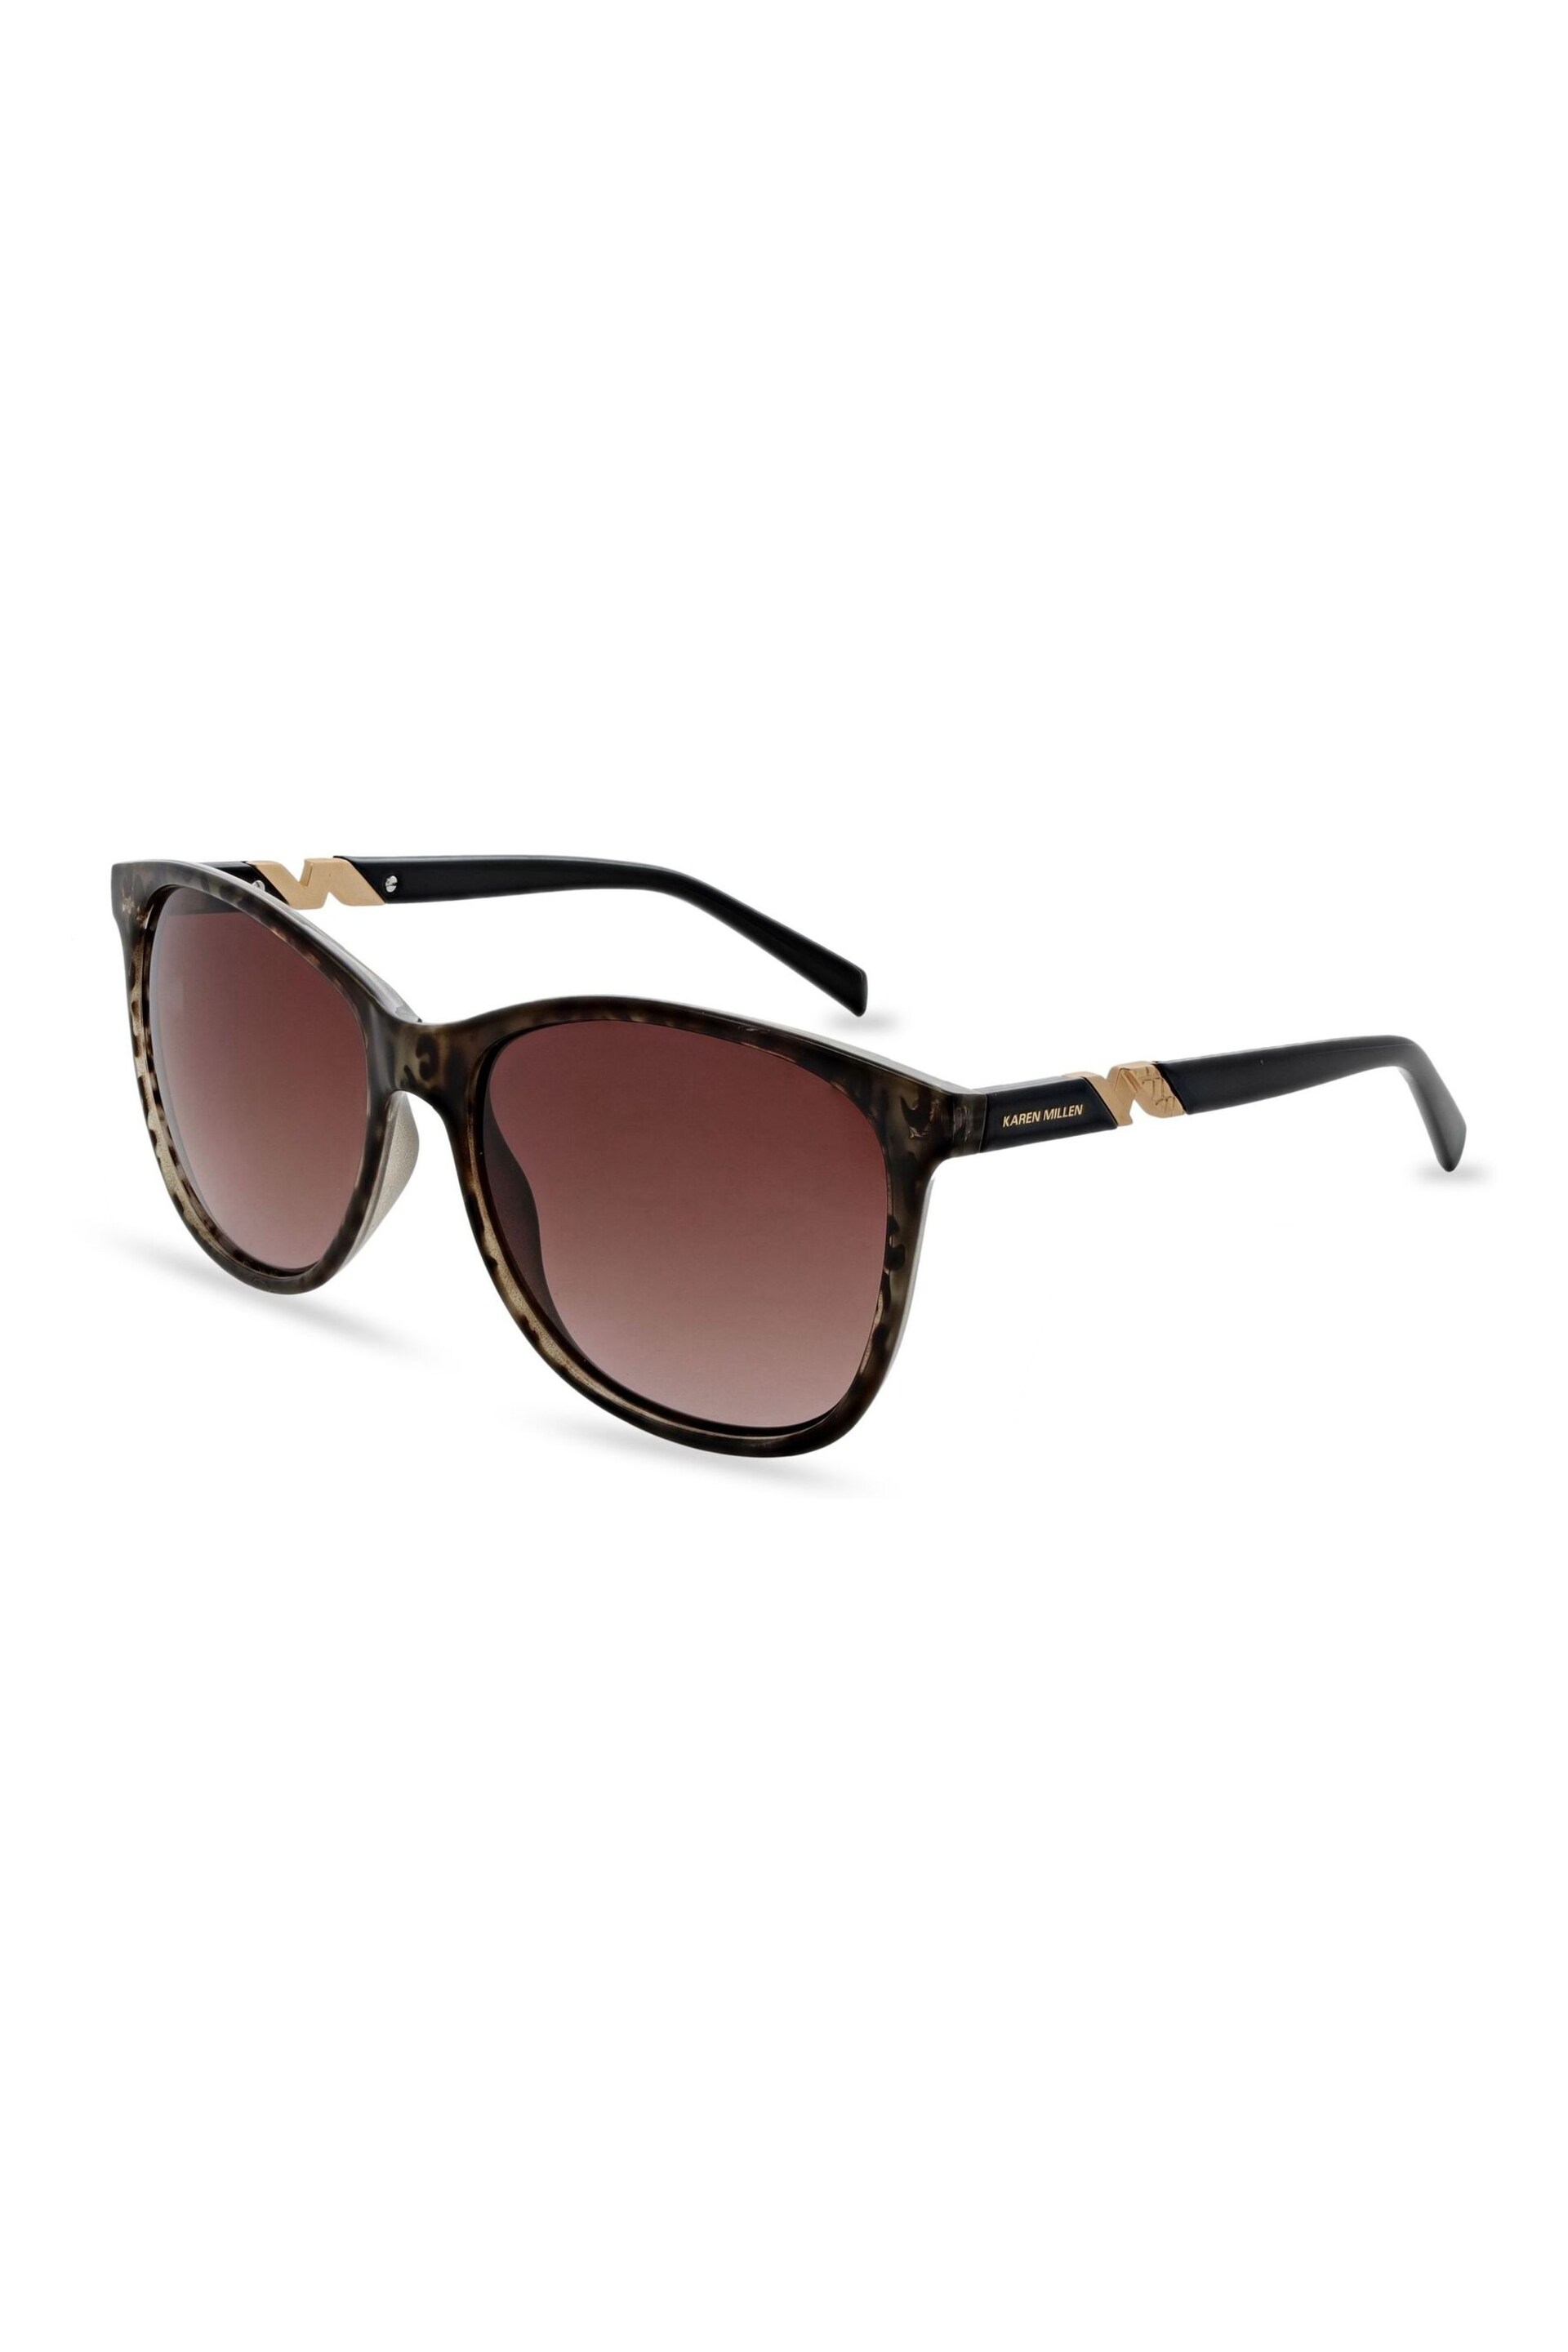 Karen Millen KM5057 Brown Sunglasses - Image 1 of 5